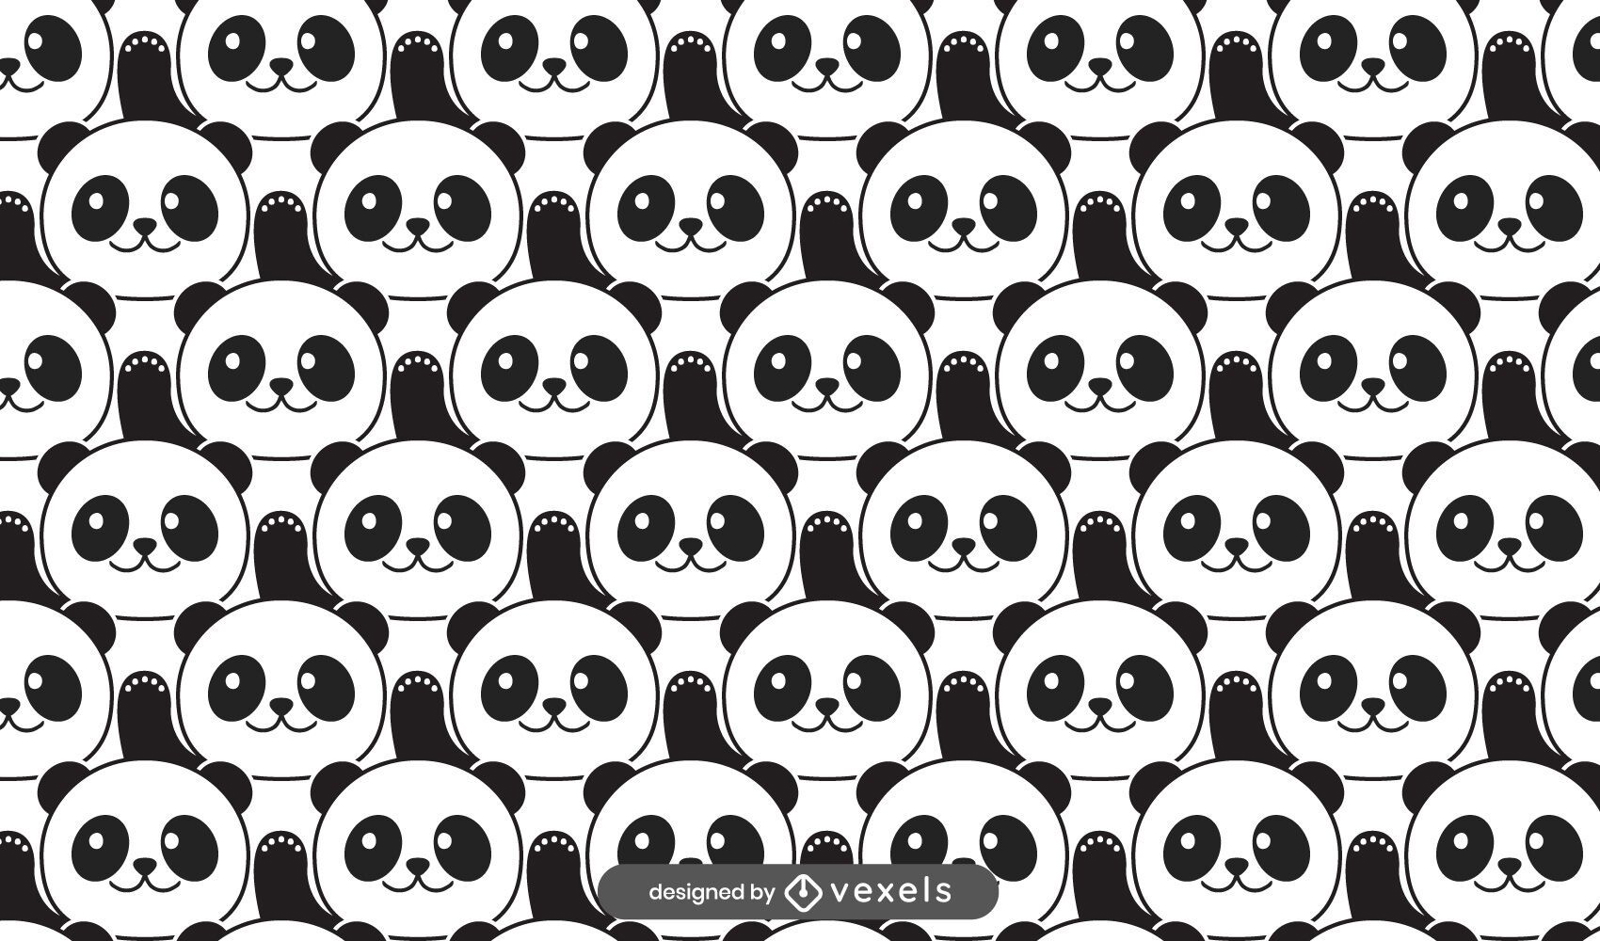 Cute panda bears pattern design